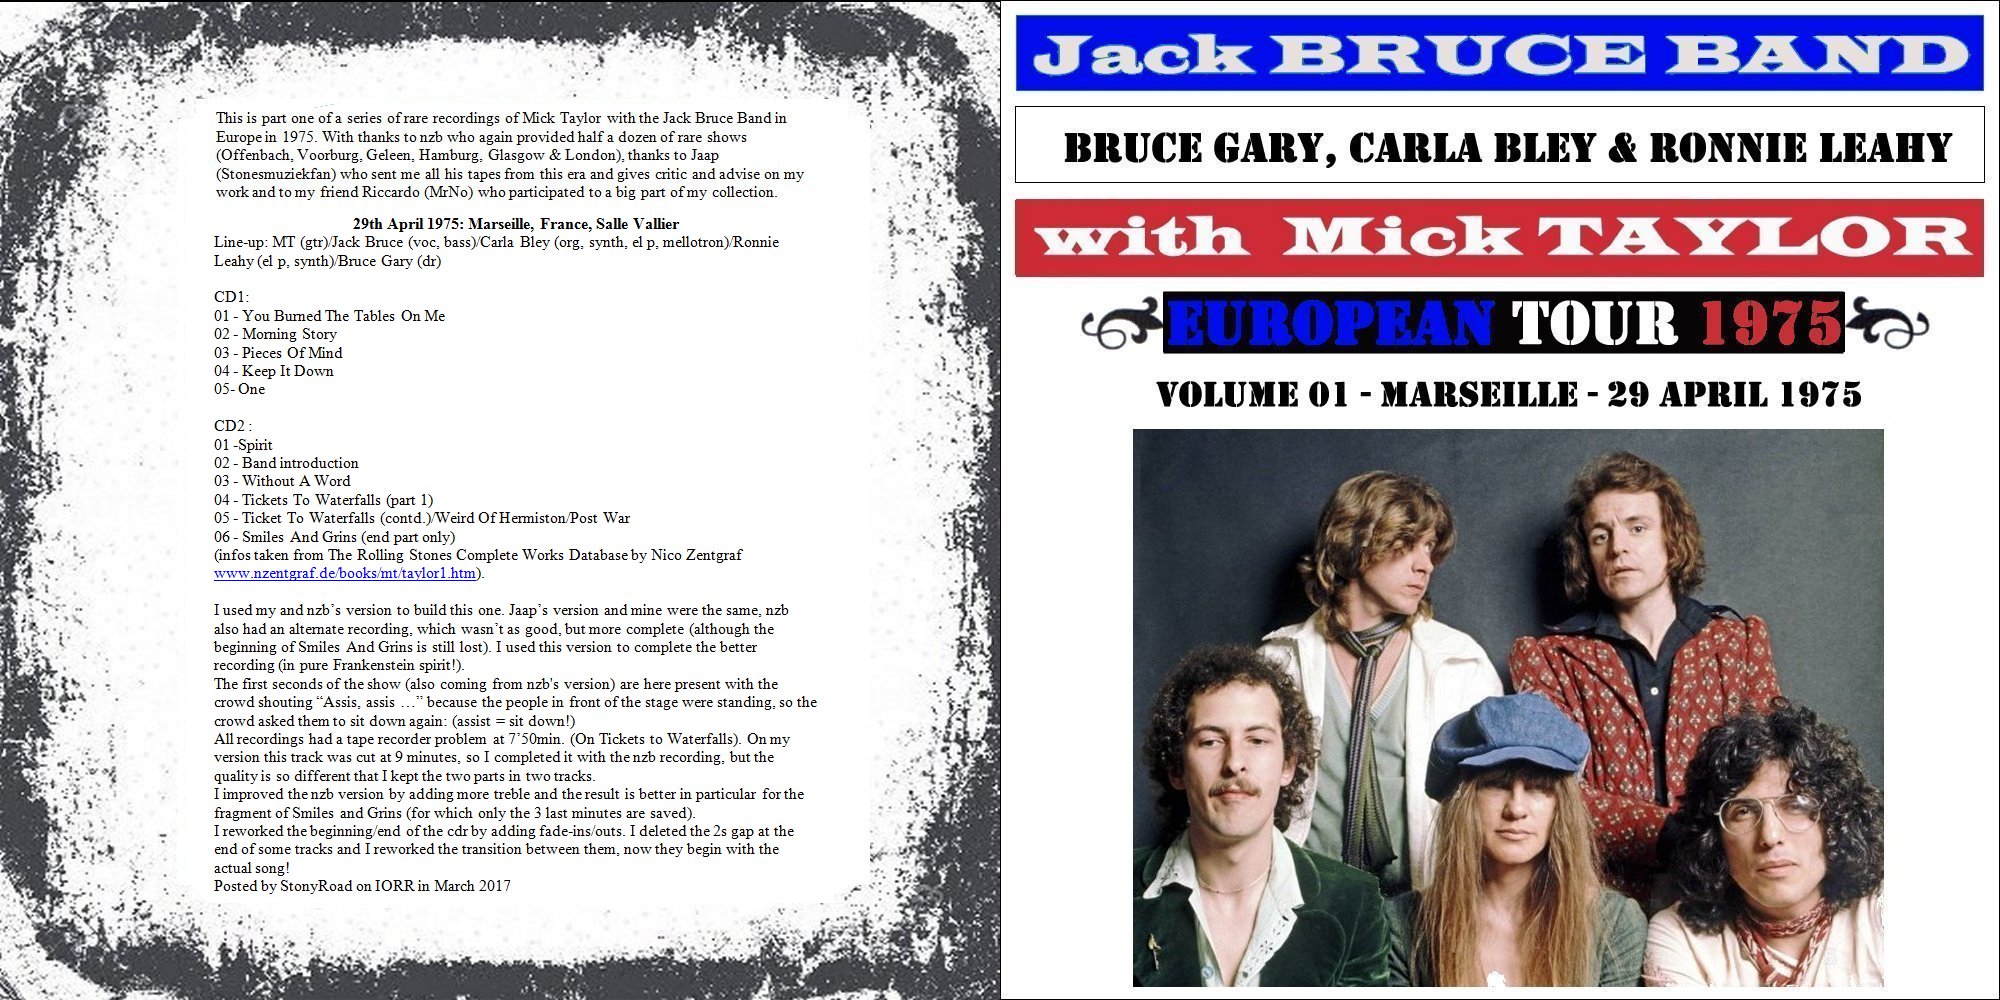 JackBruceBandMickTaylor1975-04-22MarseilleFrance (2).jpg